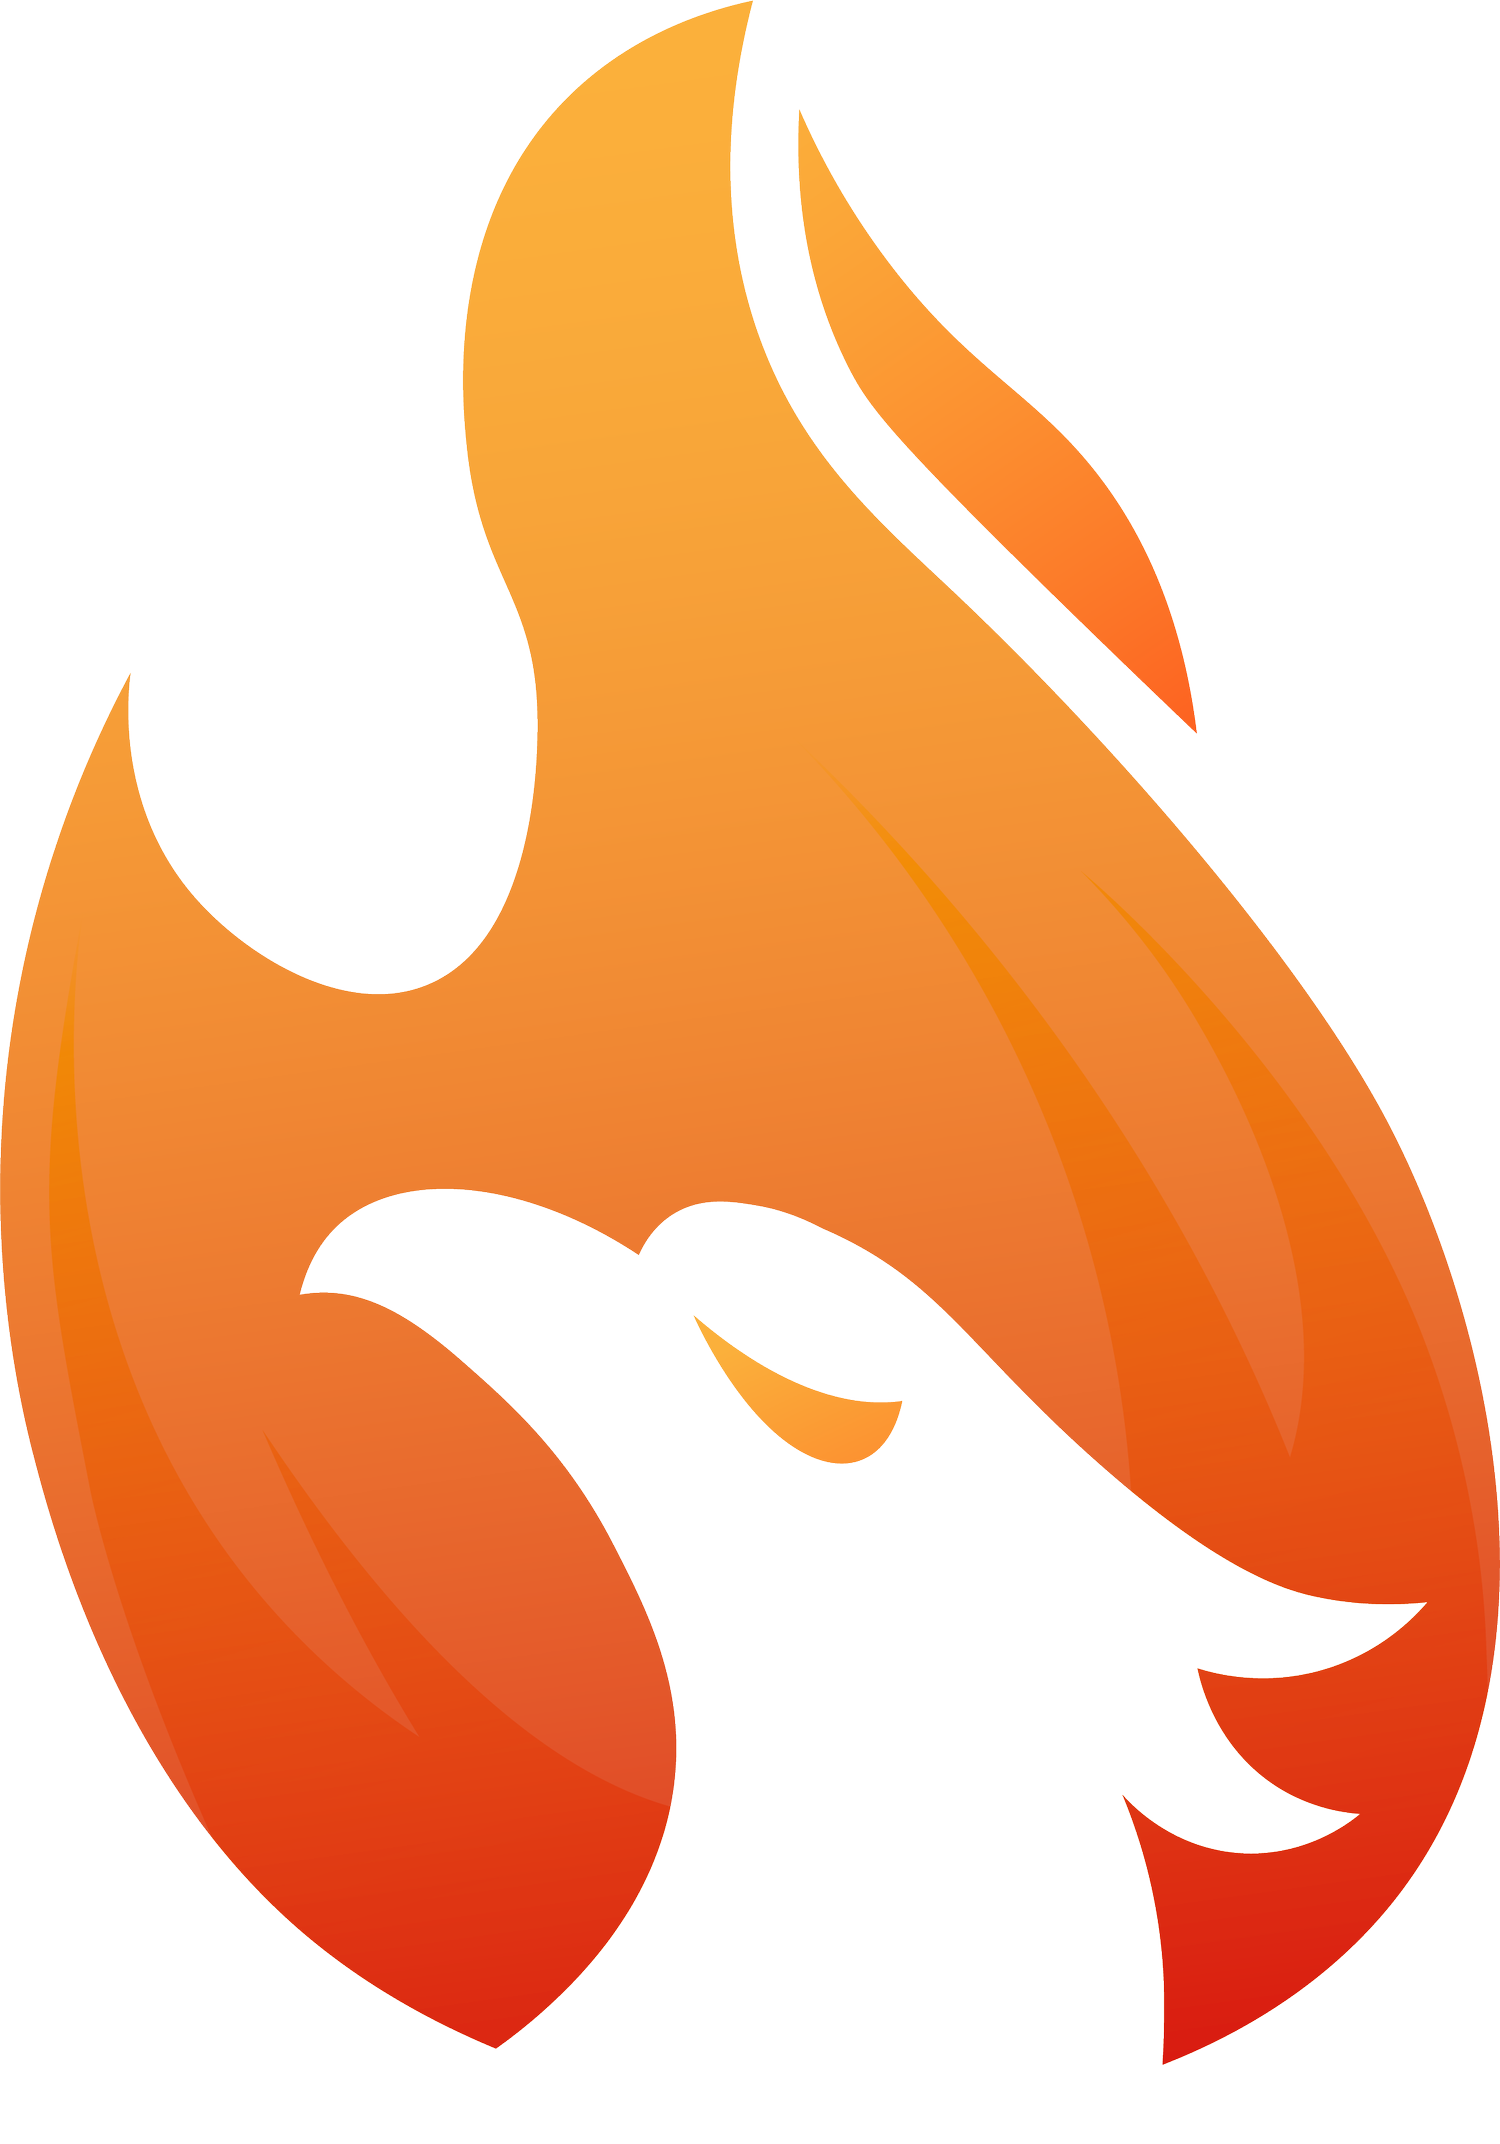 Firebird: Built to Burn